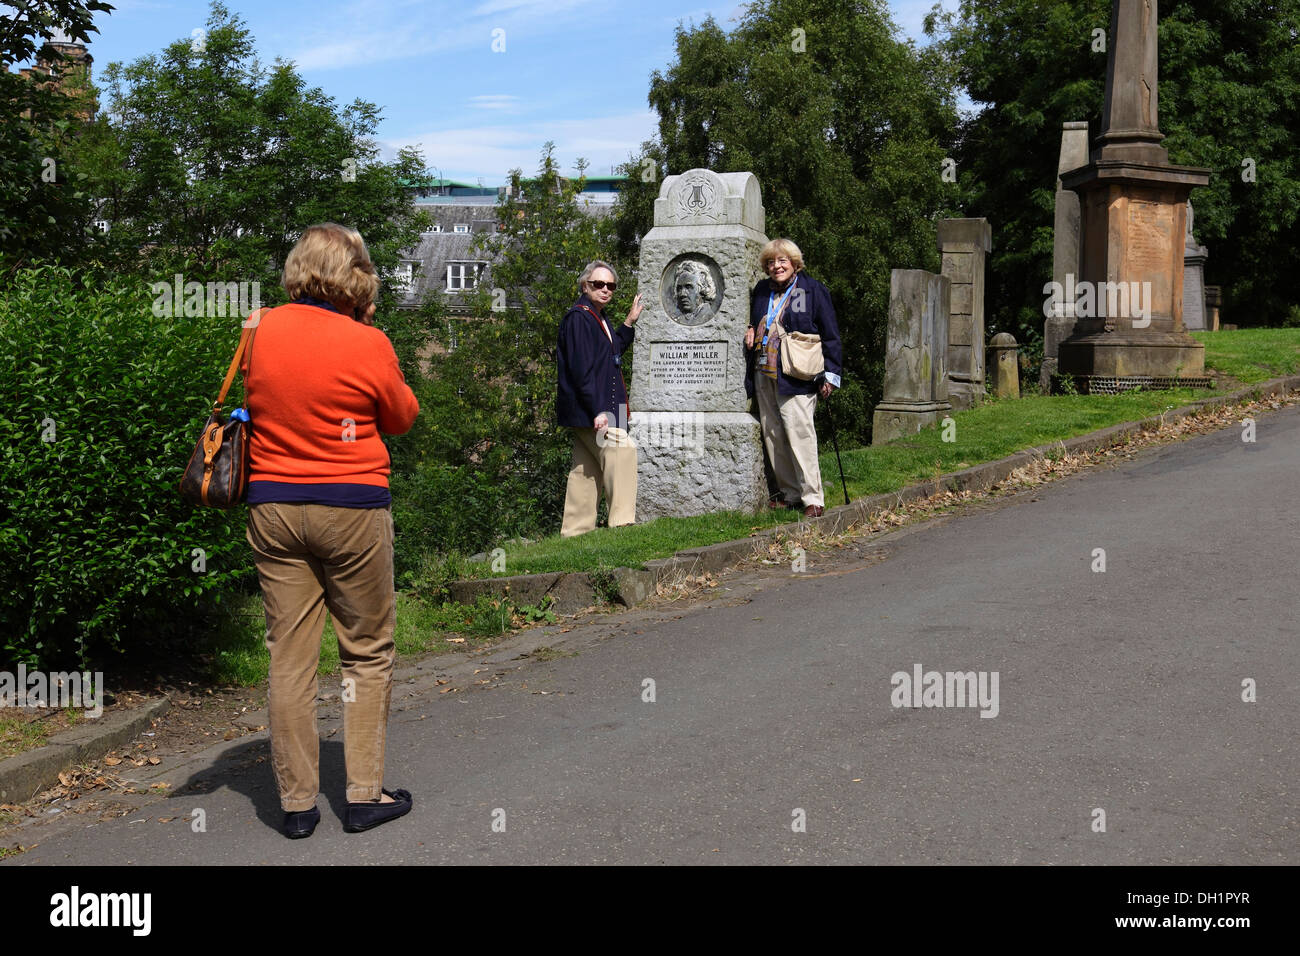 Touristes posant pour une photo à côté du mémorial à William Miller, Wee Willie Winkie auteur, Glasgow Necropolis, Écosse, Royaume-Uni Banque D'Images